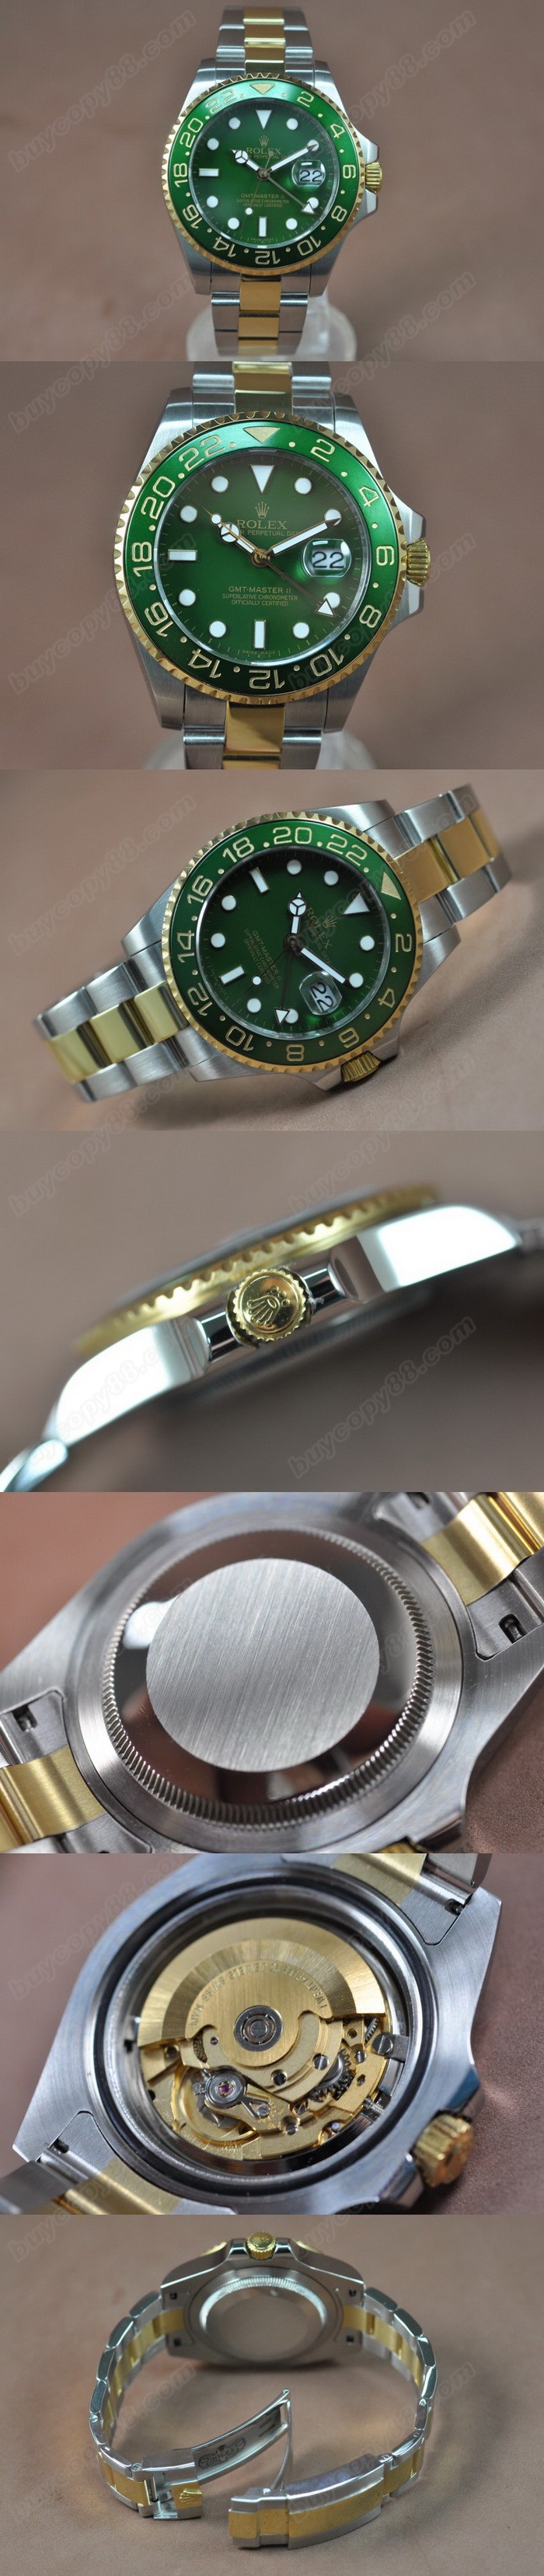  勞力士 Watches GMT Master 43mm TT Ceramiac 錶圈 綠 A-2836-2 自動機芯 搭 載  0